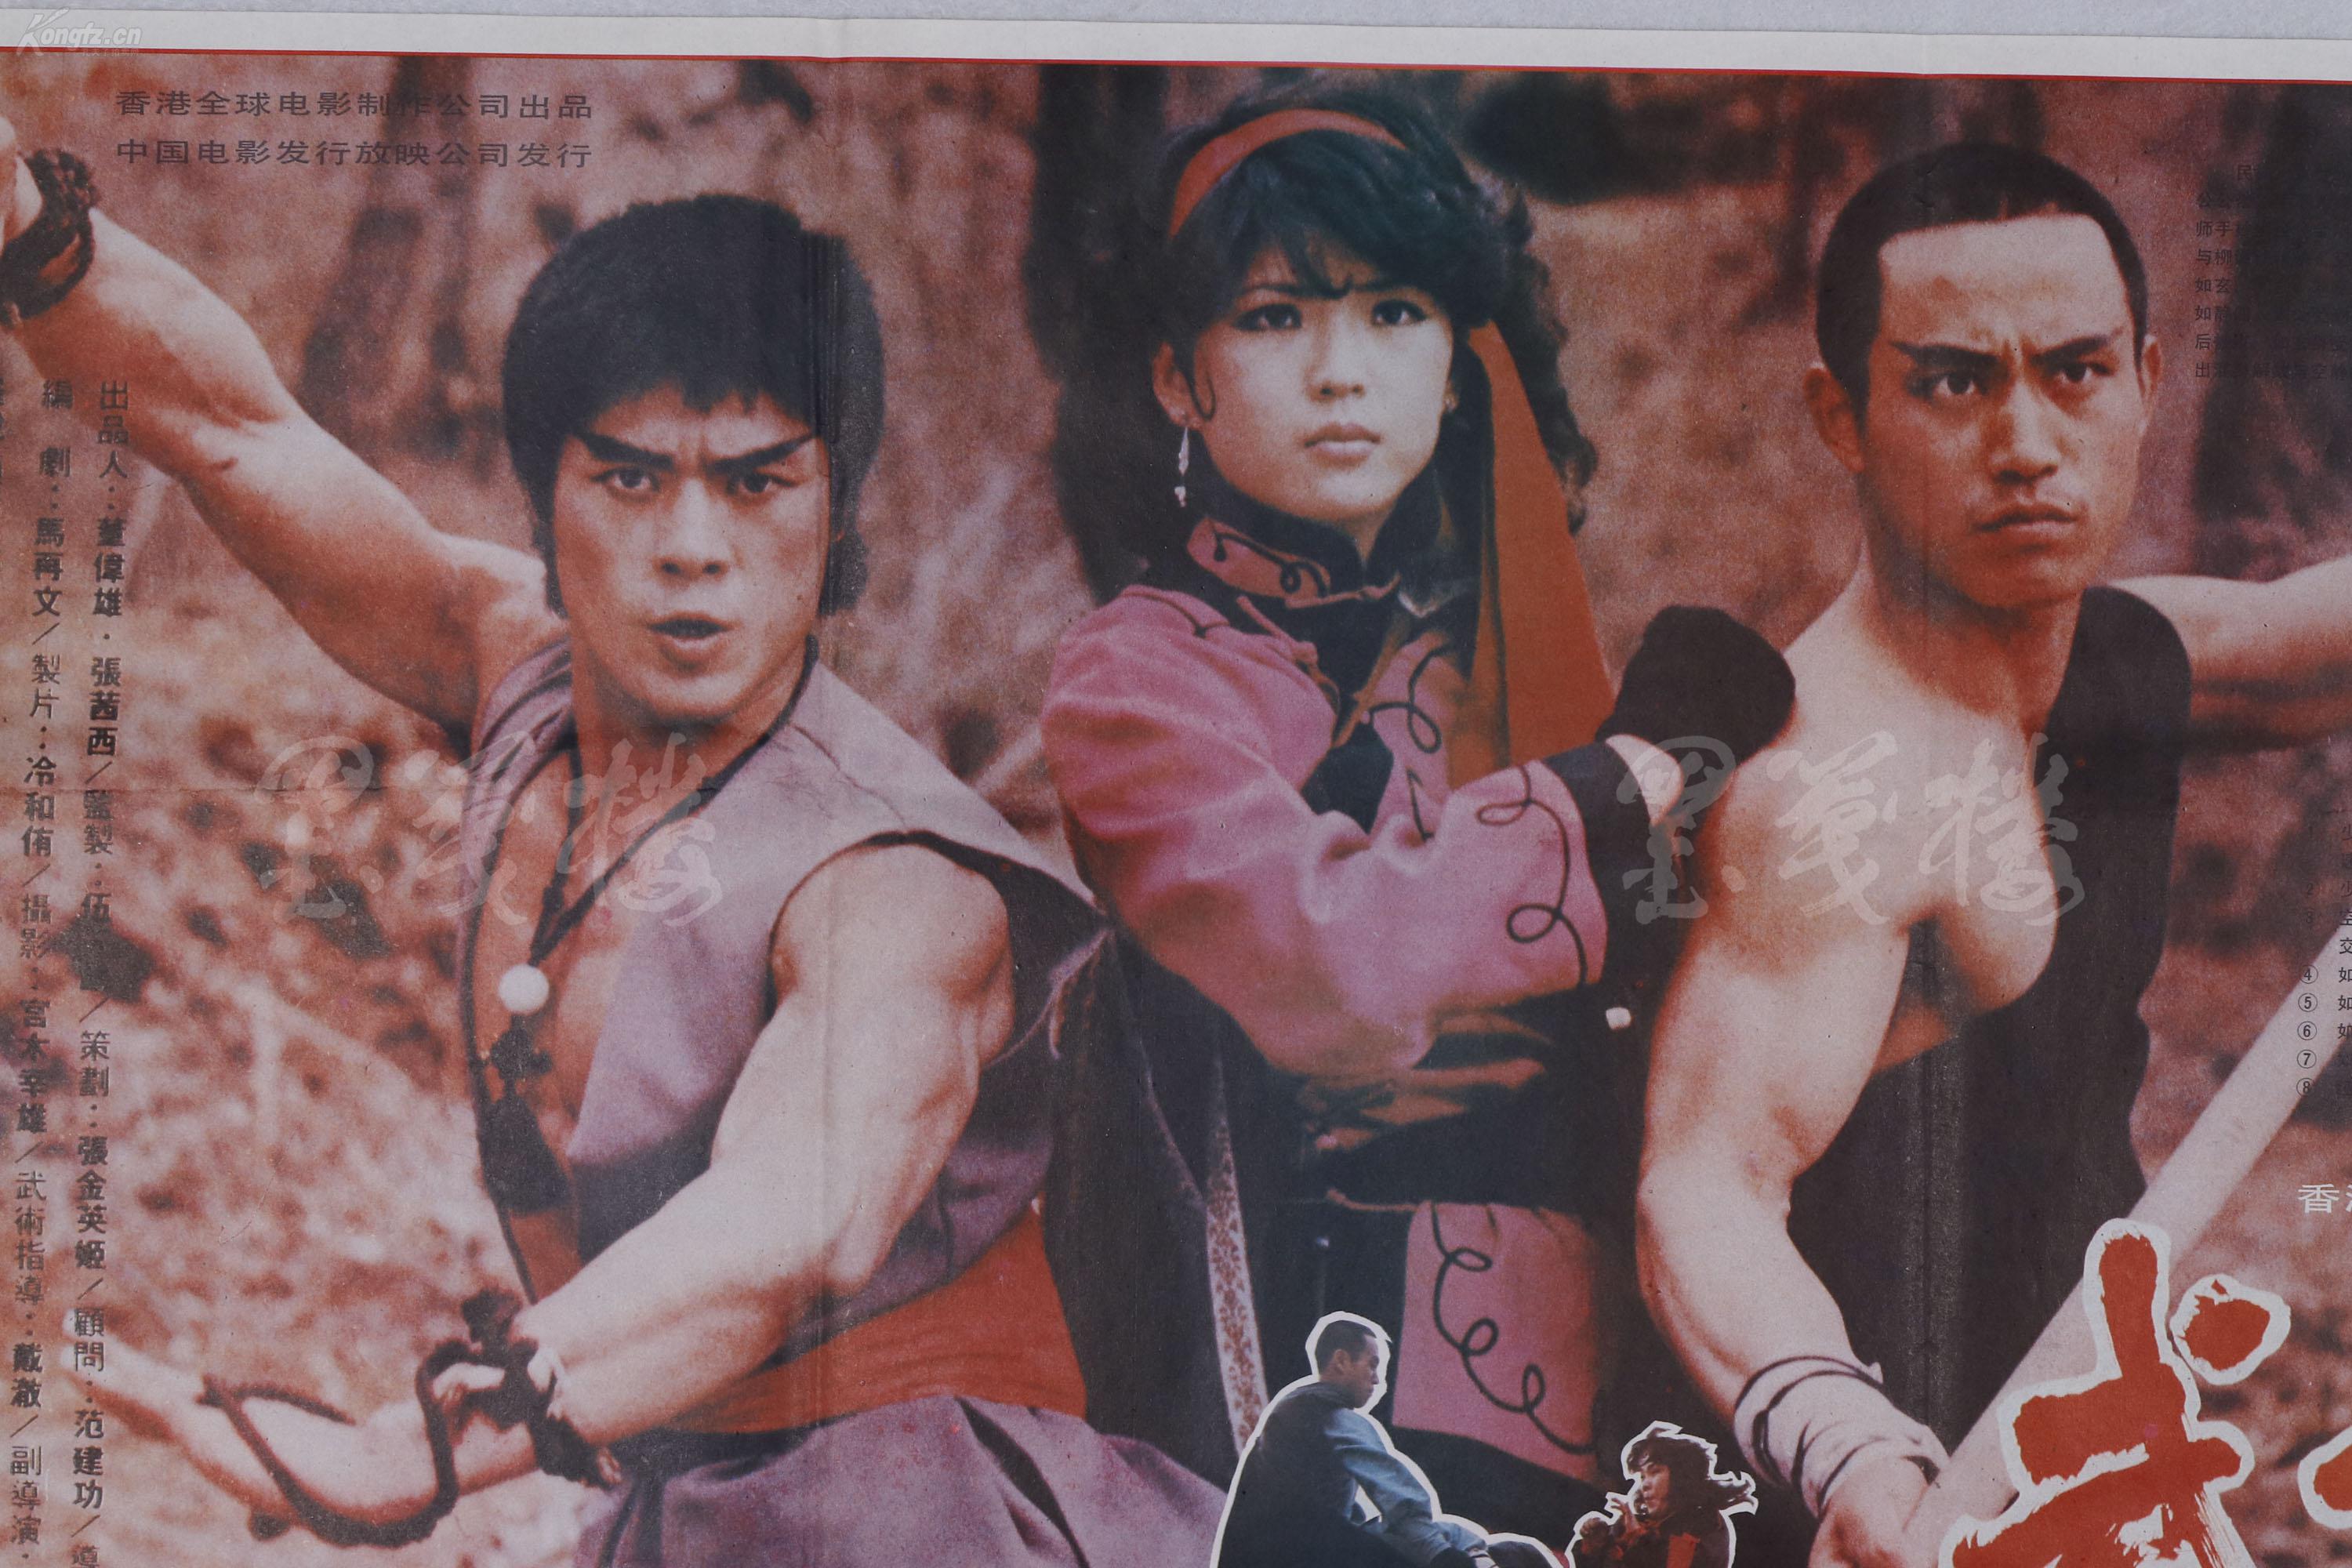 赵-庆-伟收藏:八十年代 中国电影发行放映公司放映《武僧》电影海报一